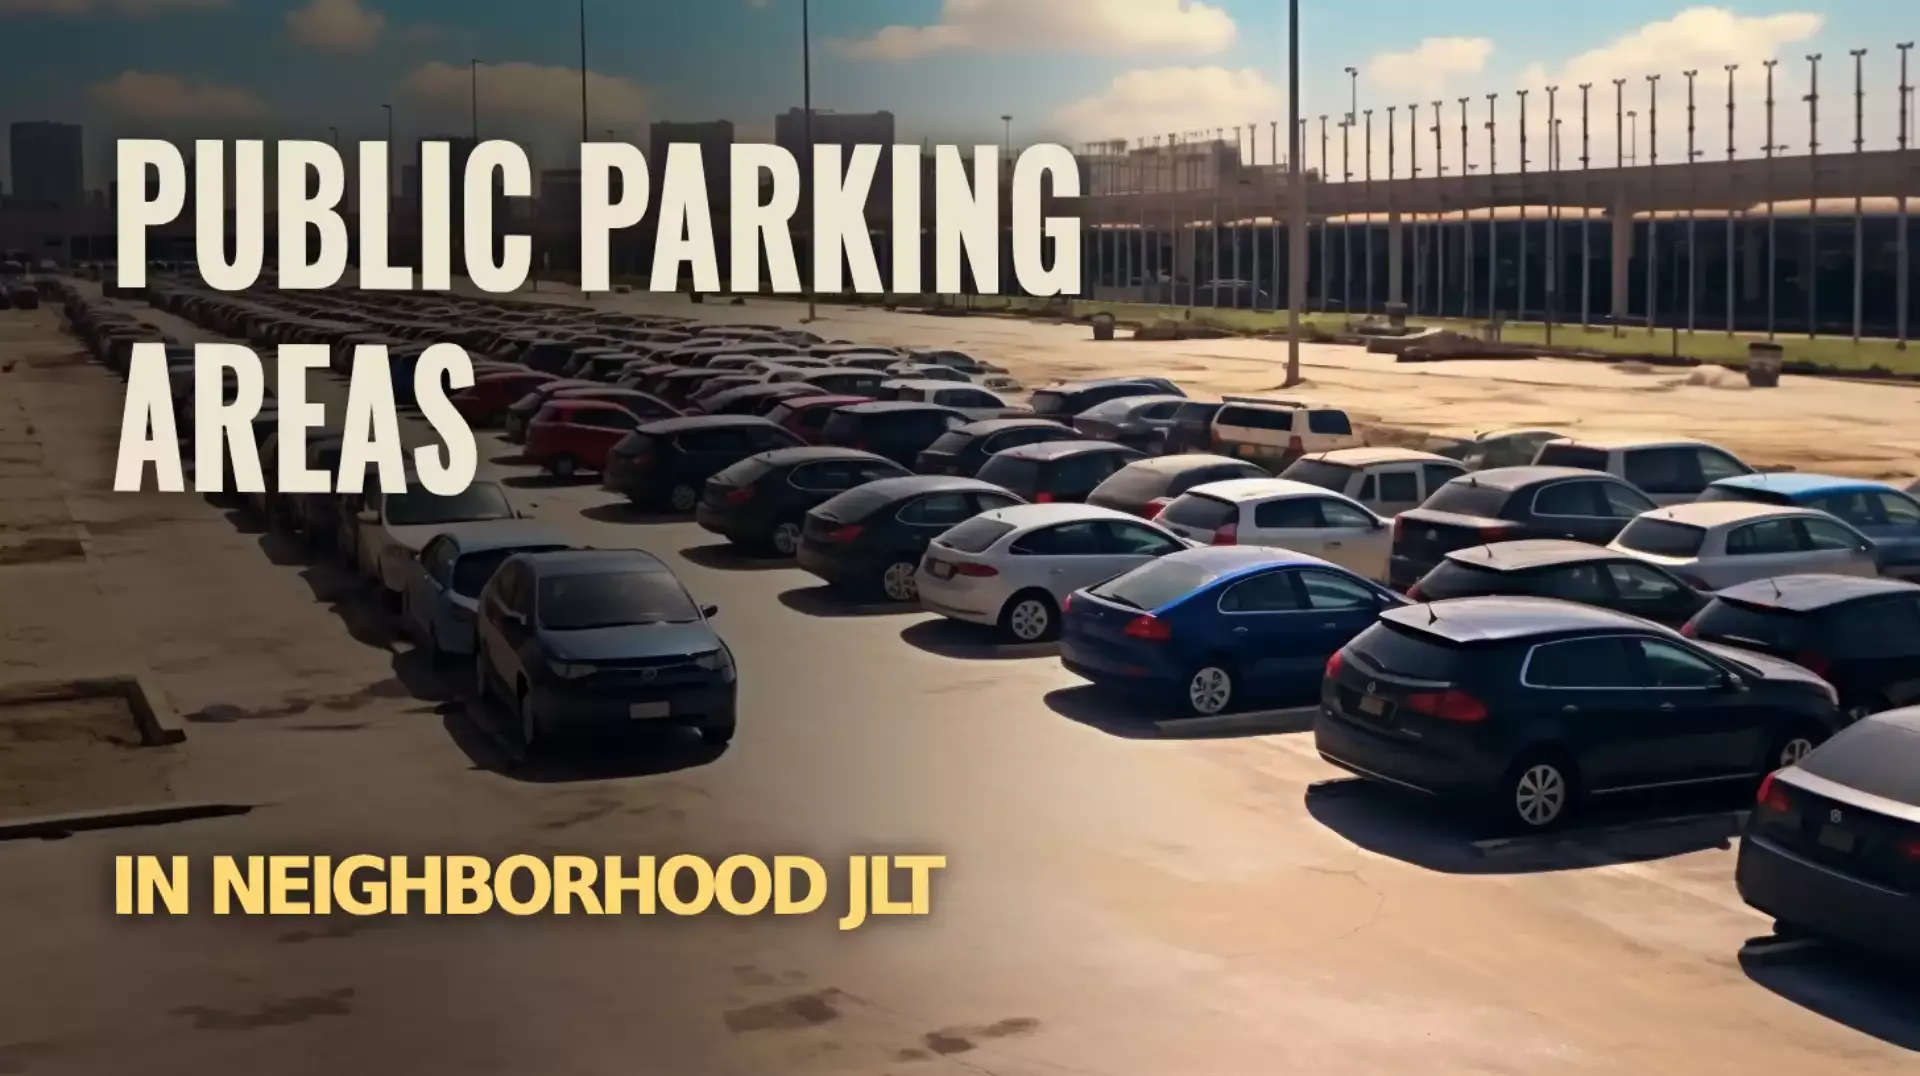 Convenient Parking Solutions: Public Parking Areas in JLT